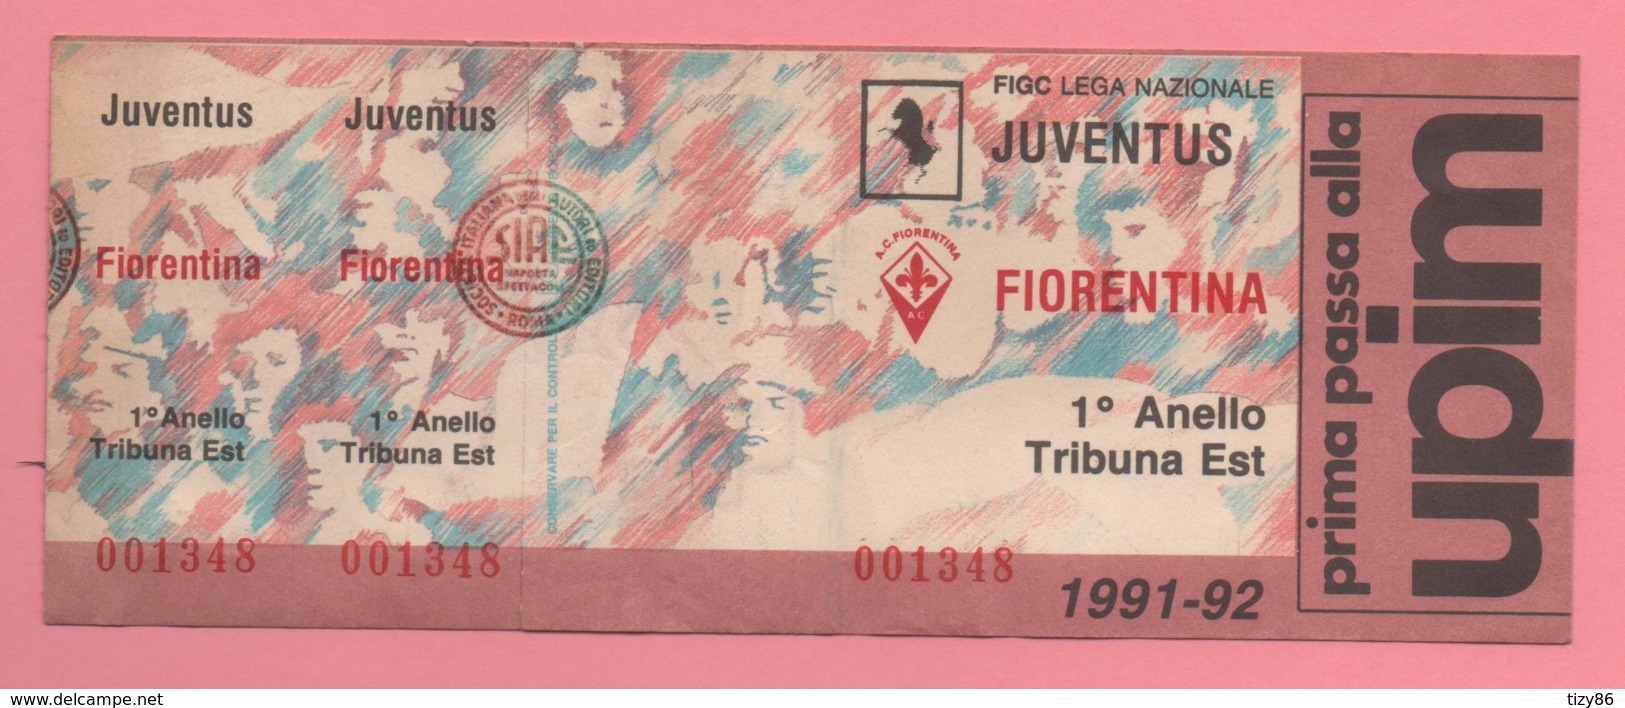 Biglietto D'ingresso Stadio Juventus Fiorentina 1991-92 - Eintrittskarten